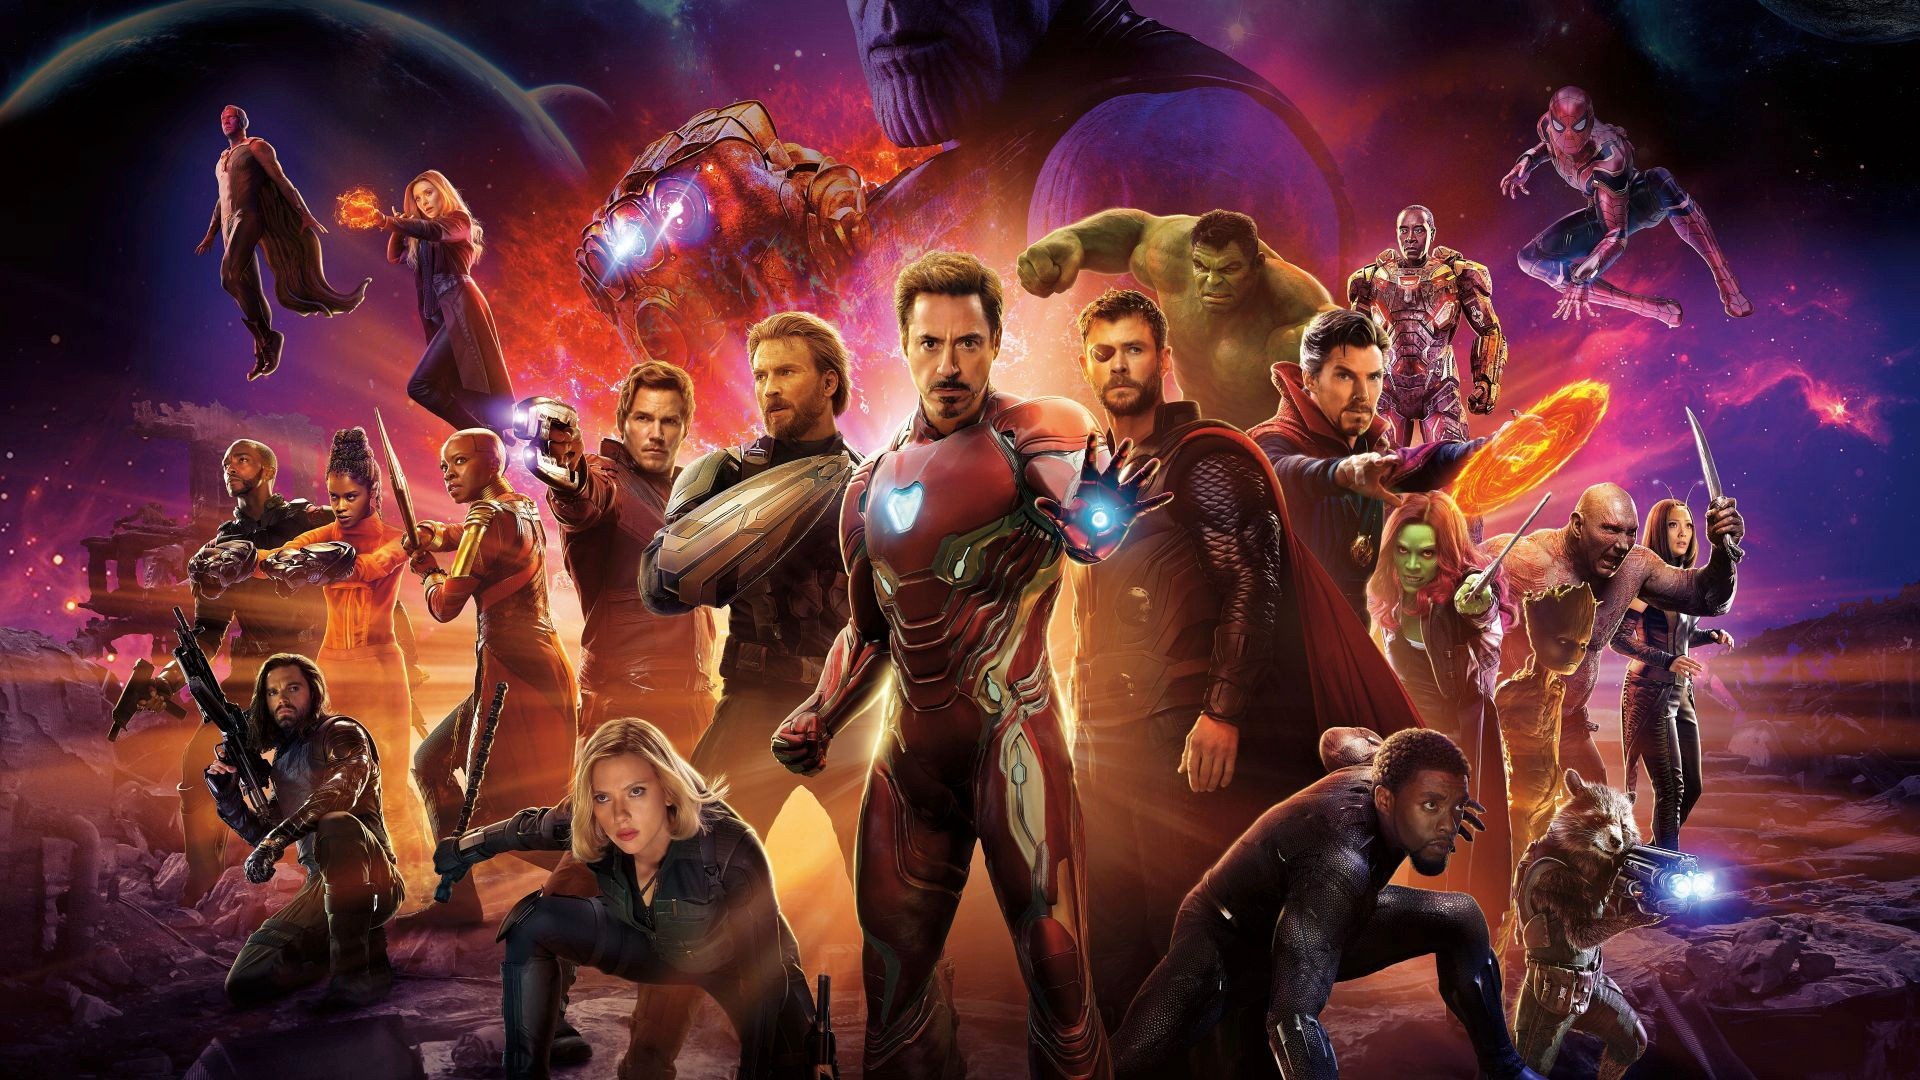 Avengers movie cover art.